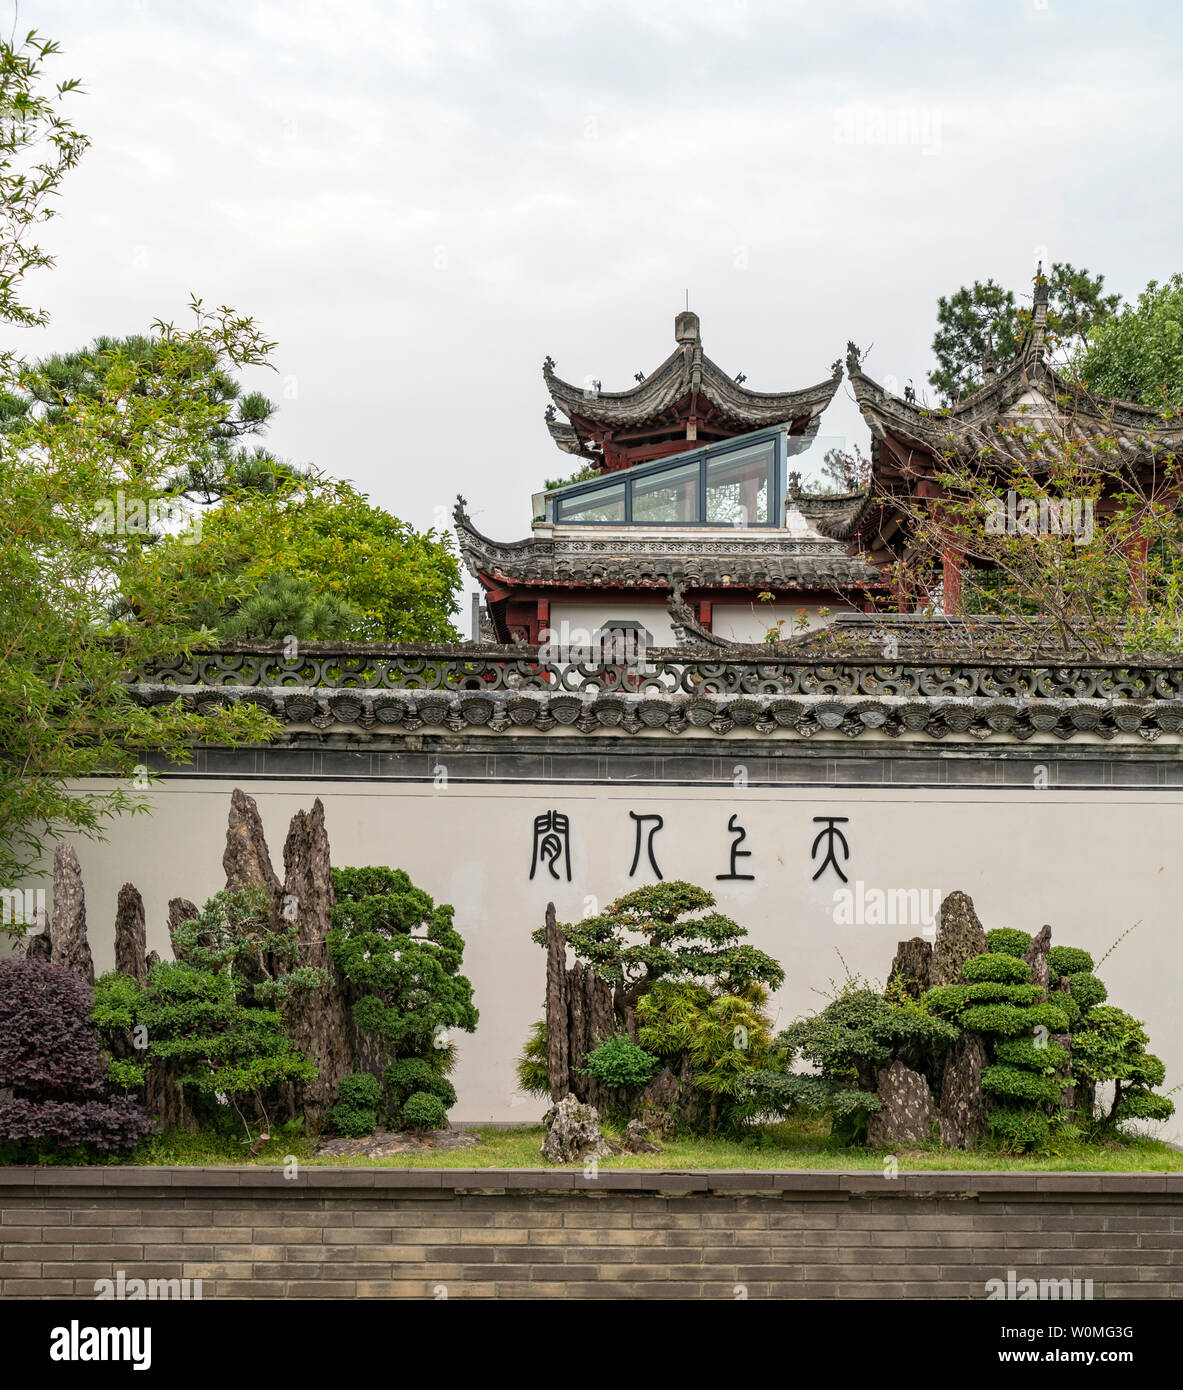 Bao family garden Banque D'Images